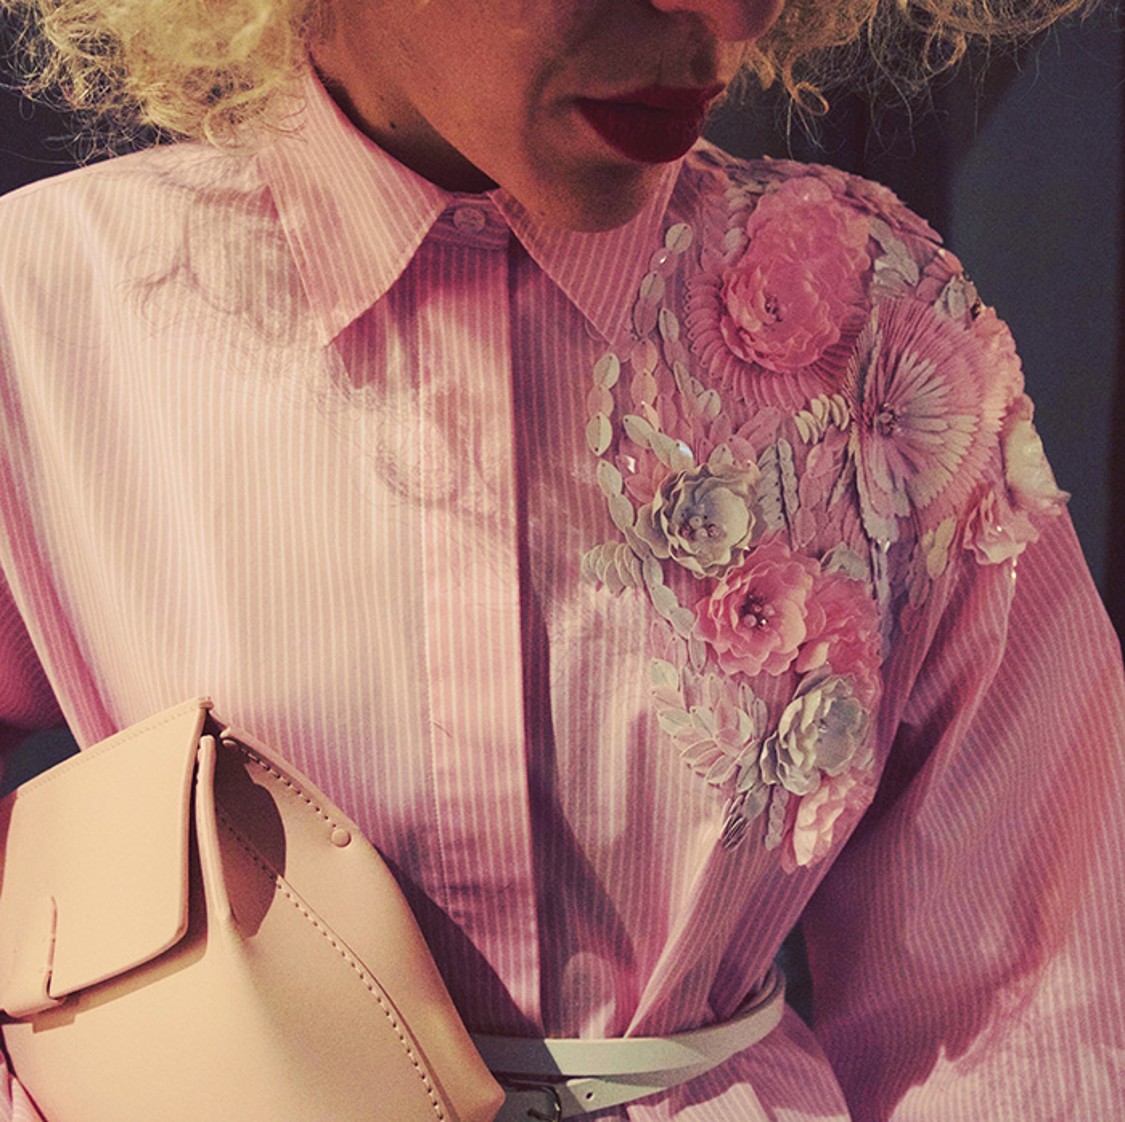 shop MSGM Sales Camicie: Camicia MSGM, rosa a righe bianche, applicazioni in paillette sulla spalla sinistra, modello classico, più lunga dietro.

Composizione: 72% cotone, 25% poliestere, 3% elastan. number 1191